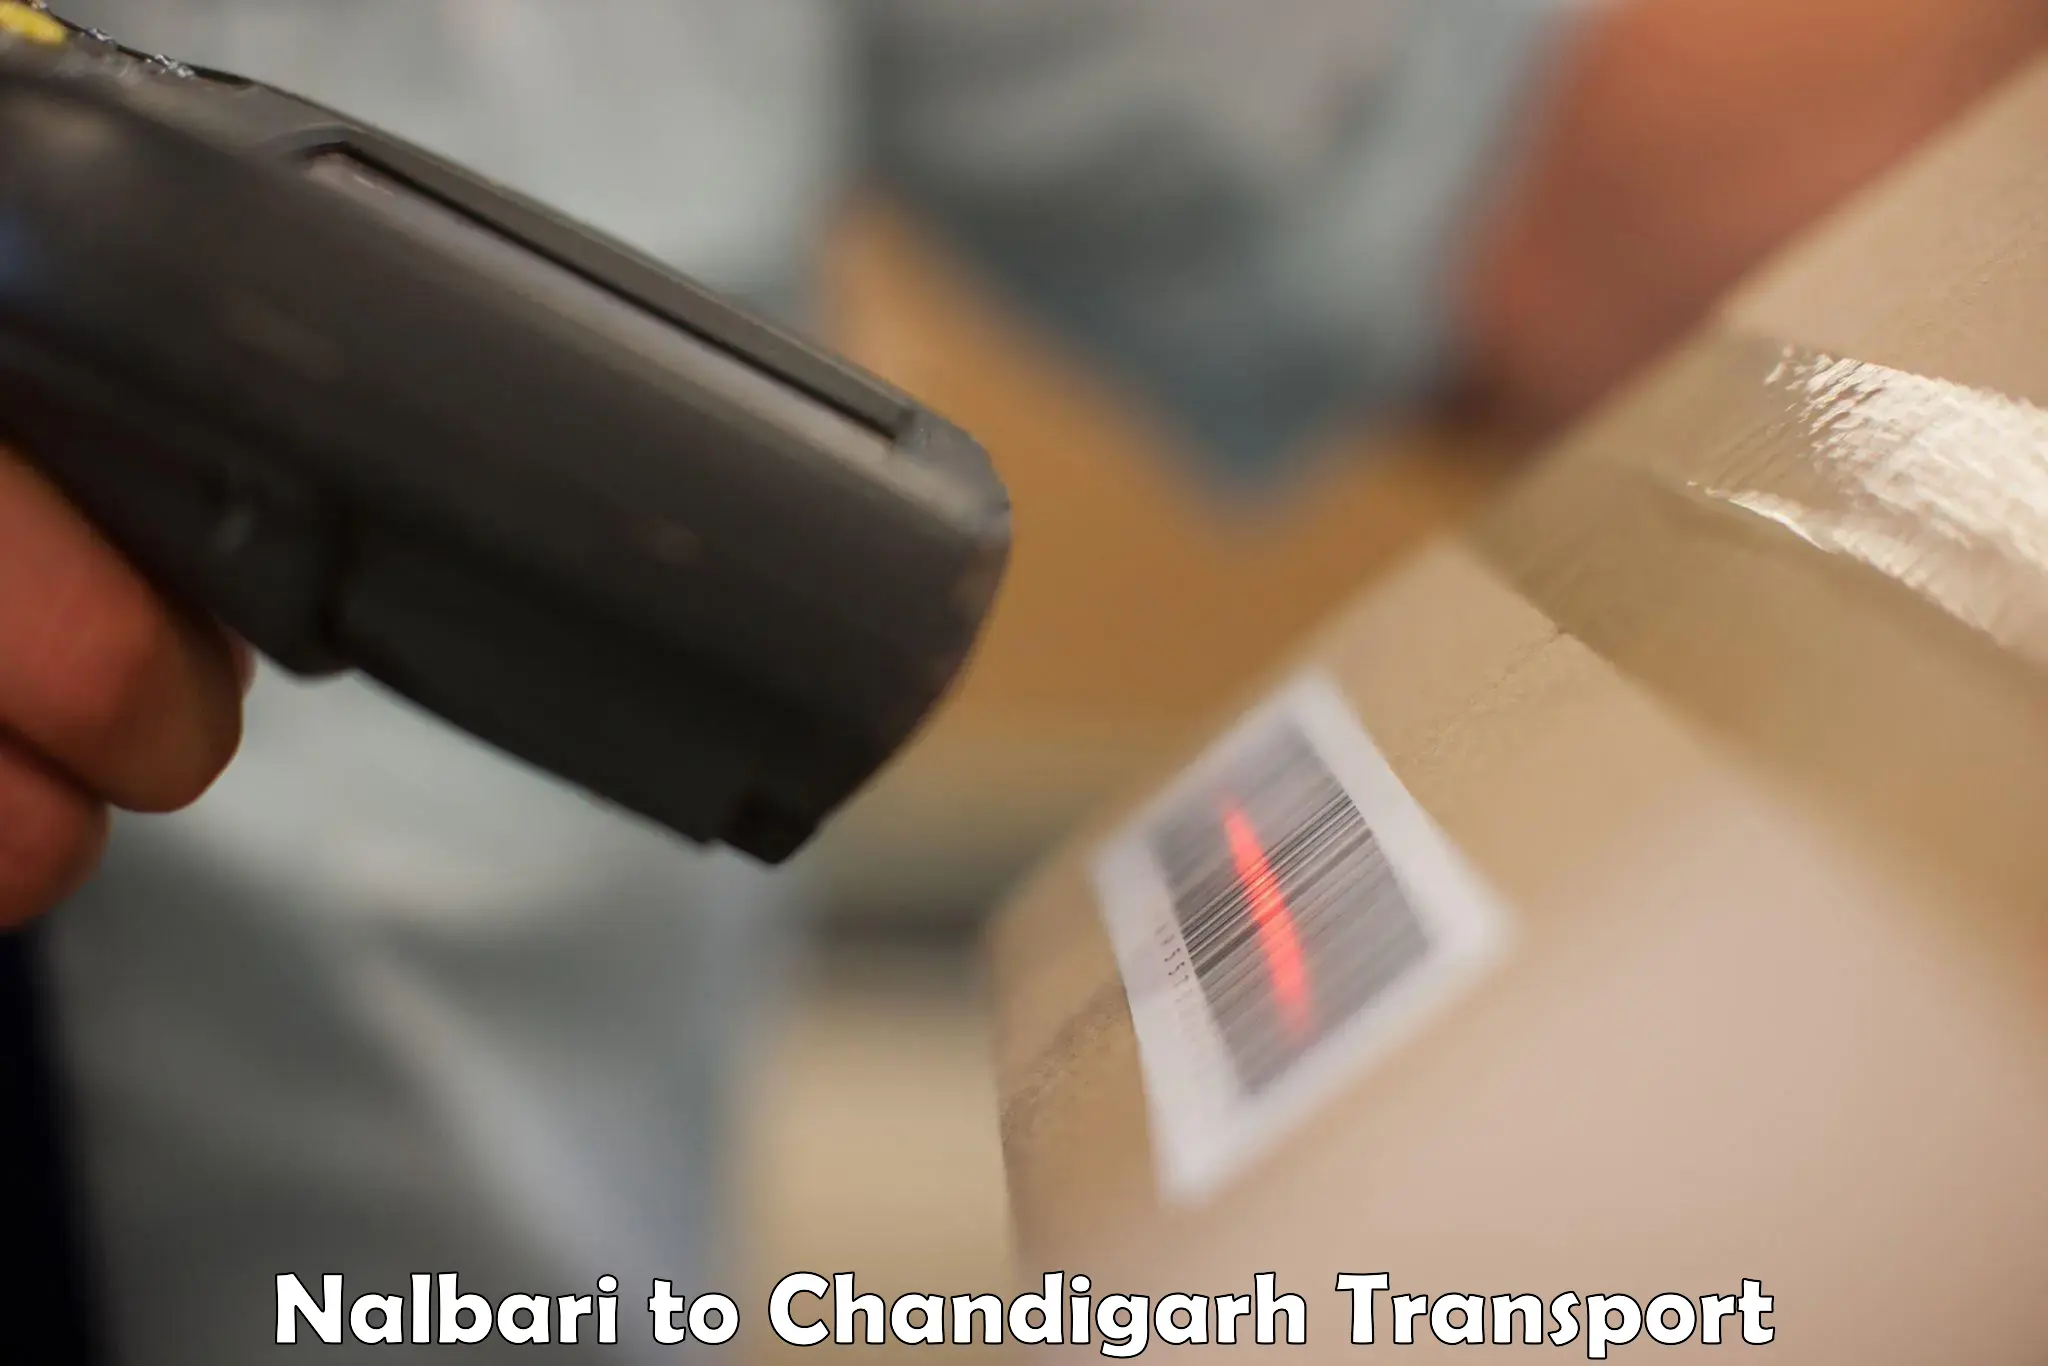 Lorry transport service Nalbari to Chandigarh